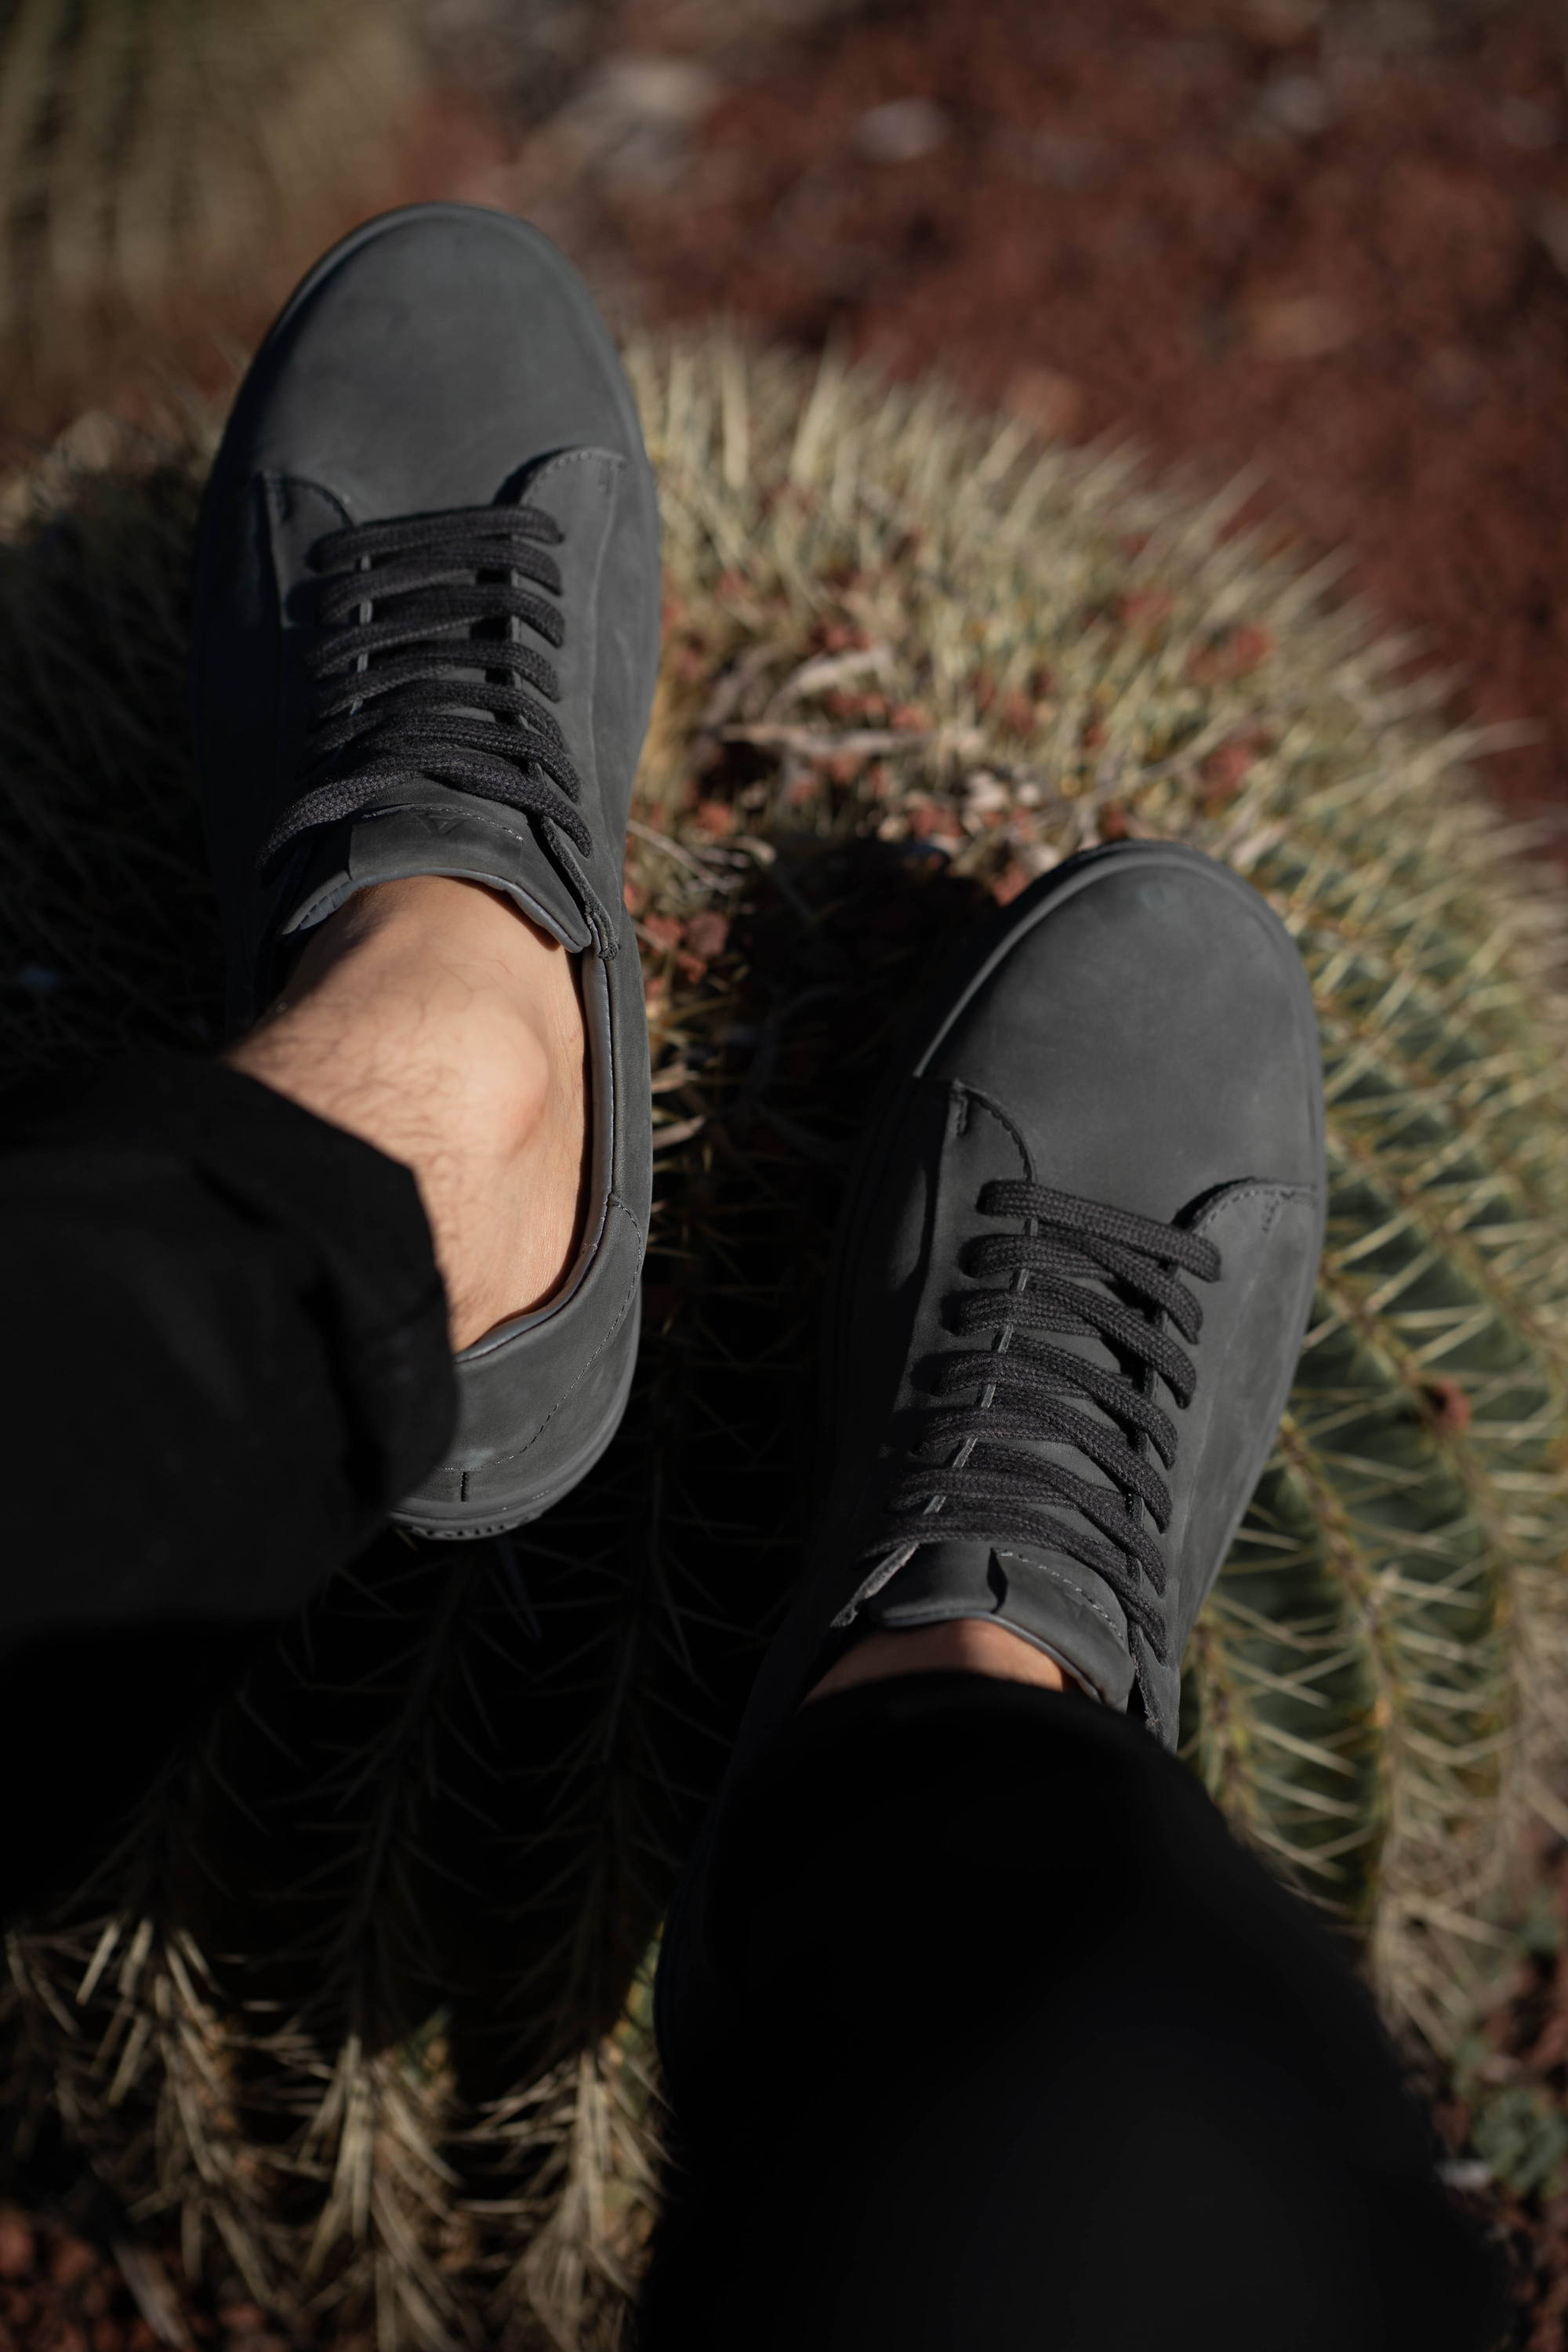 Deco 2.0 Nubuck Dark Grey Sneakers worn with Seth Socks and Black Pants